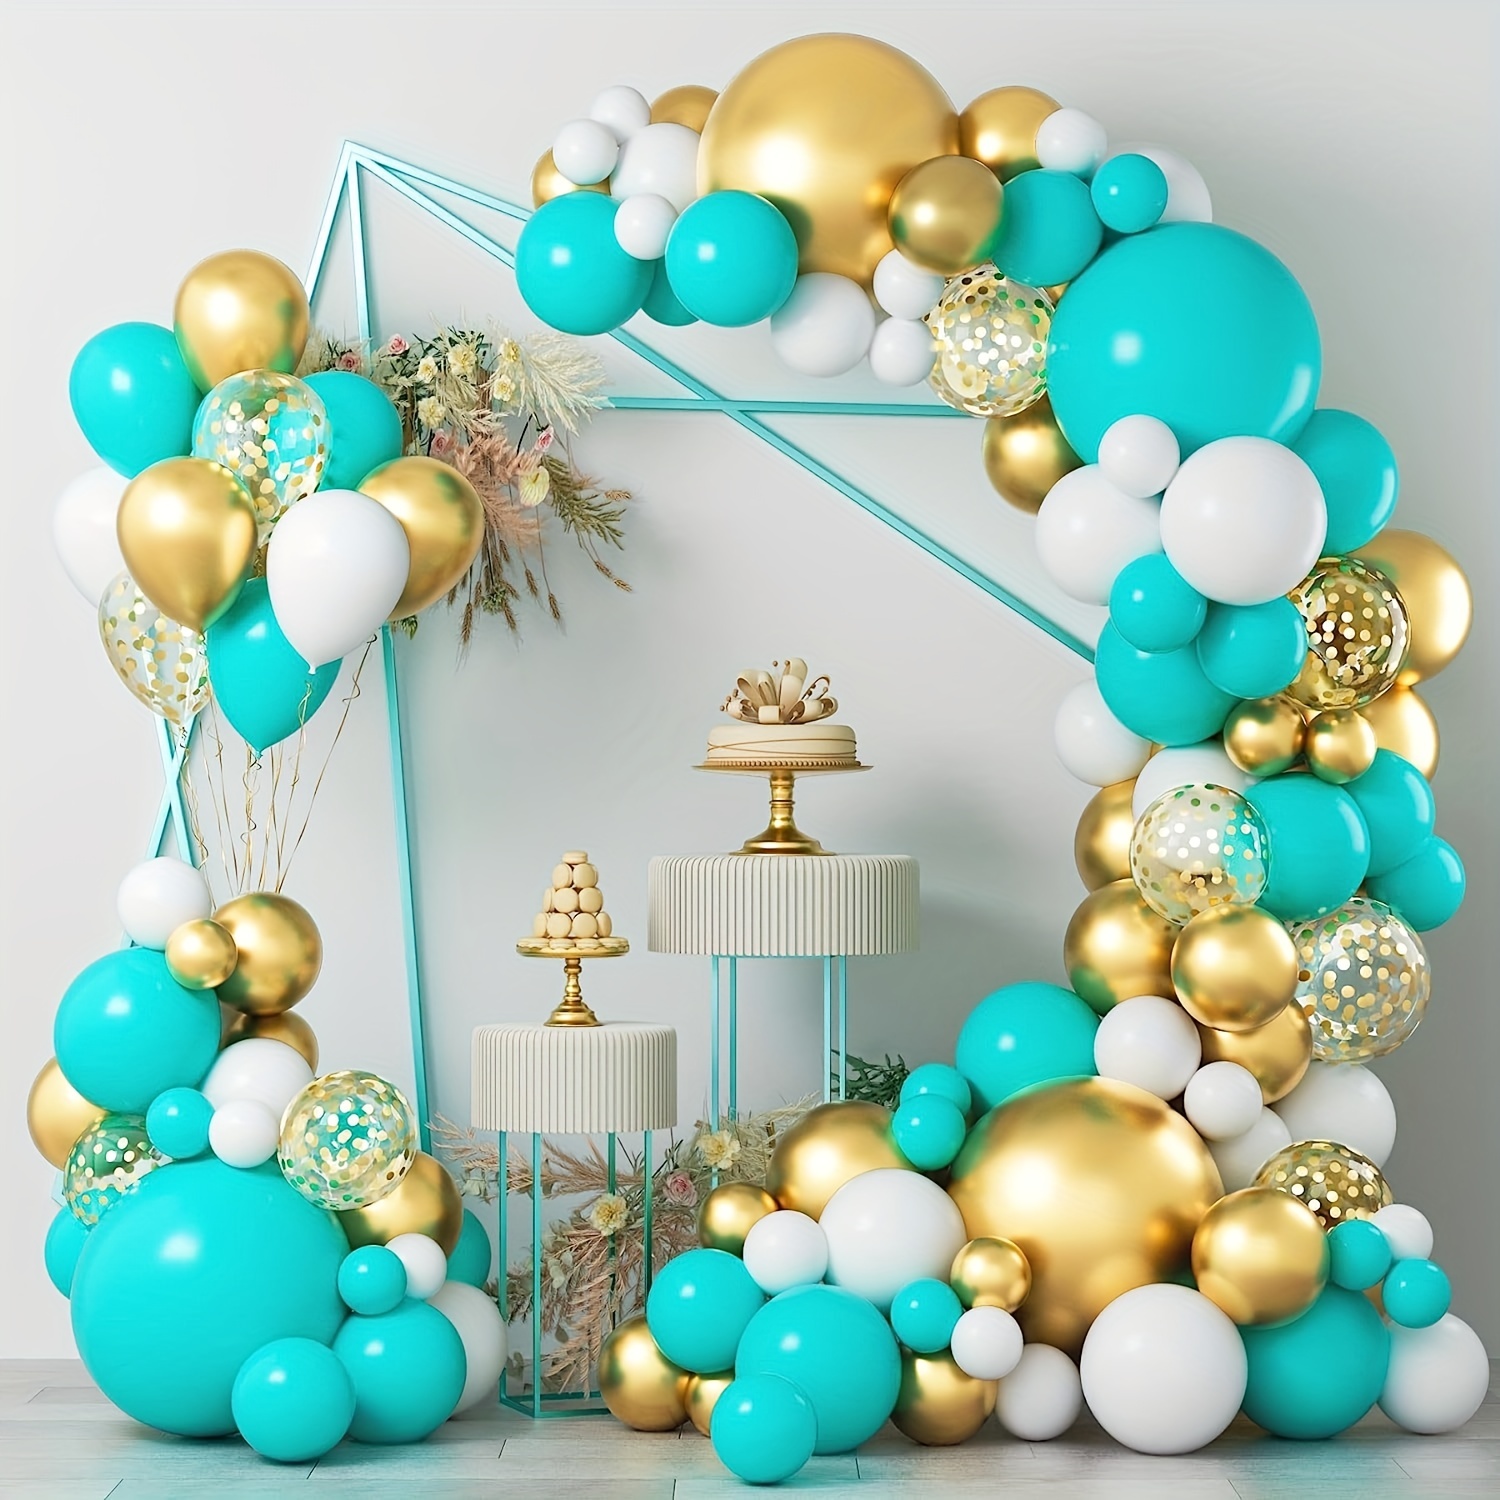 Globos de látex de confeti de color verde azulado y plateado, 50 globos de  látex de confeti turquesa, azul, blanco, plateado, para bodas, despedidas